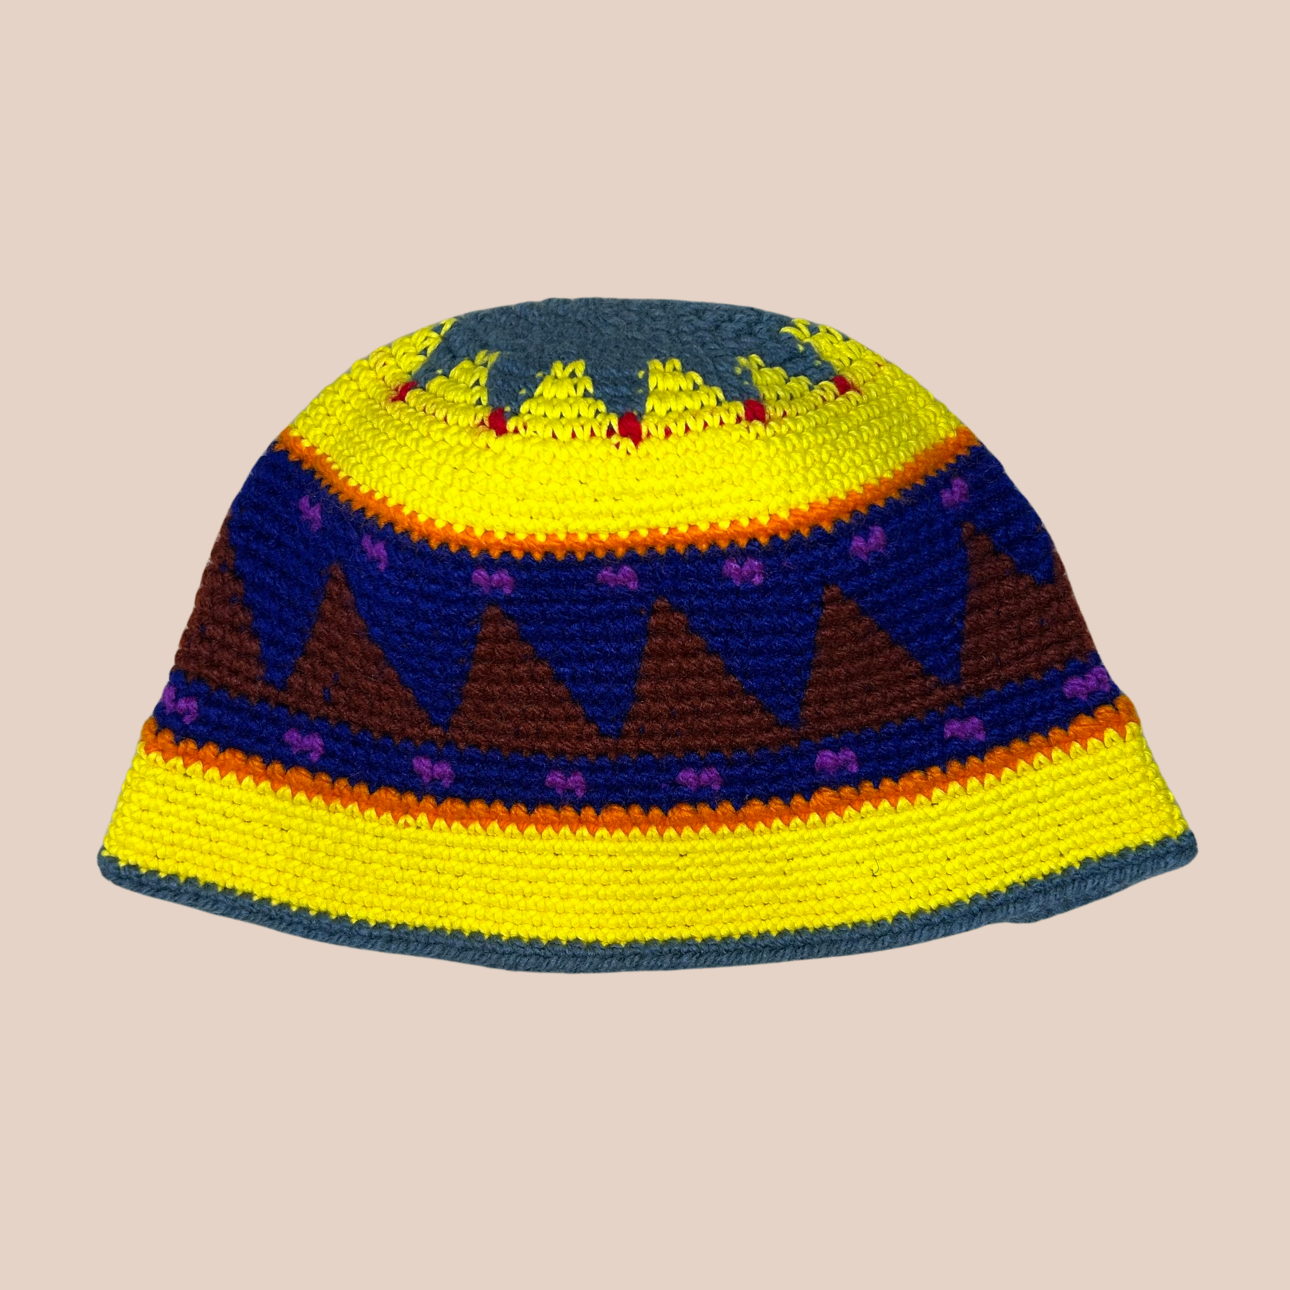 Un bucket hat crocheté en laine et acrylique, arborant des couleurs vives et audacieuses